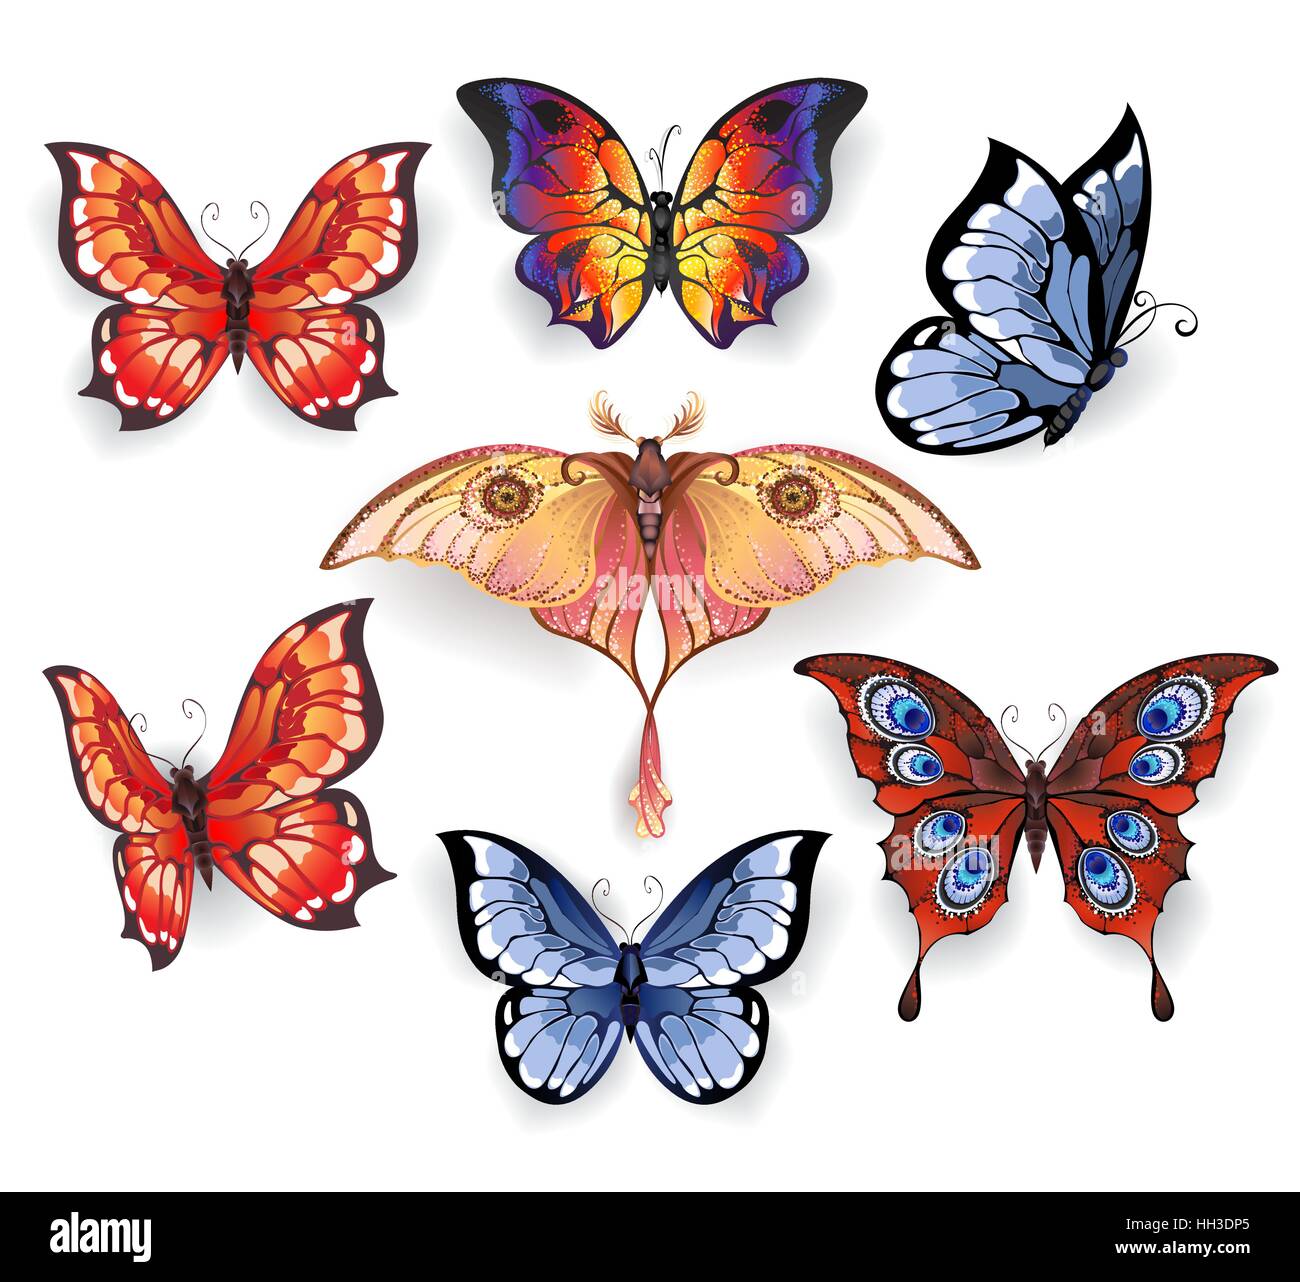 Ensemble de lumineux isolé, papillons exotiques réaliste sur un fond blanc. Papillons exotiques. Illustration de Vecteur